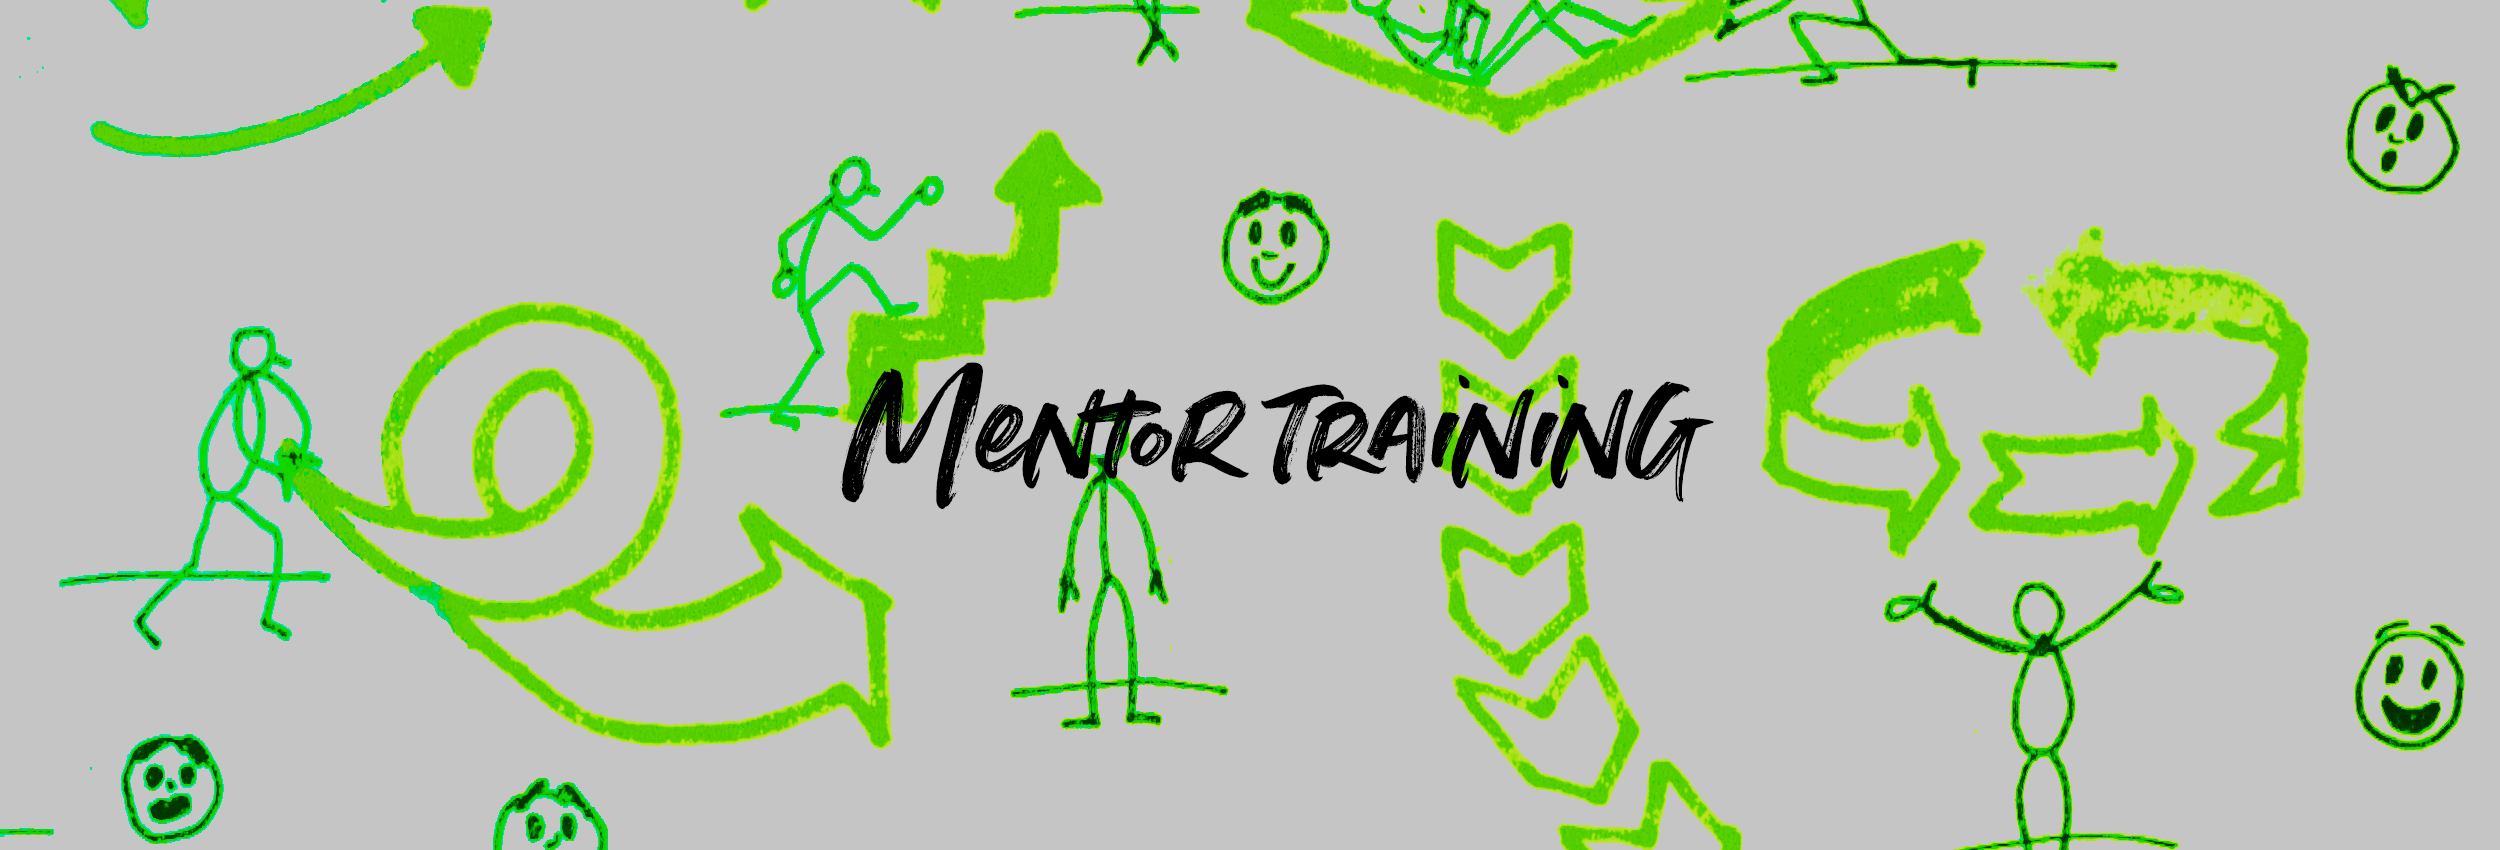 Mentor training